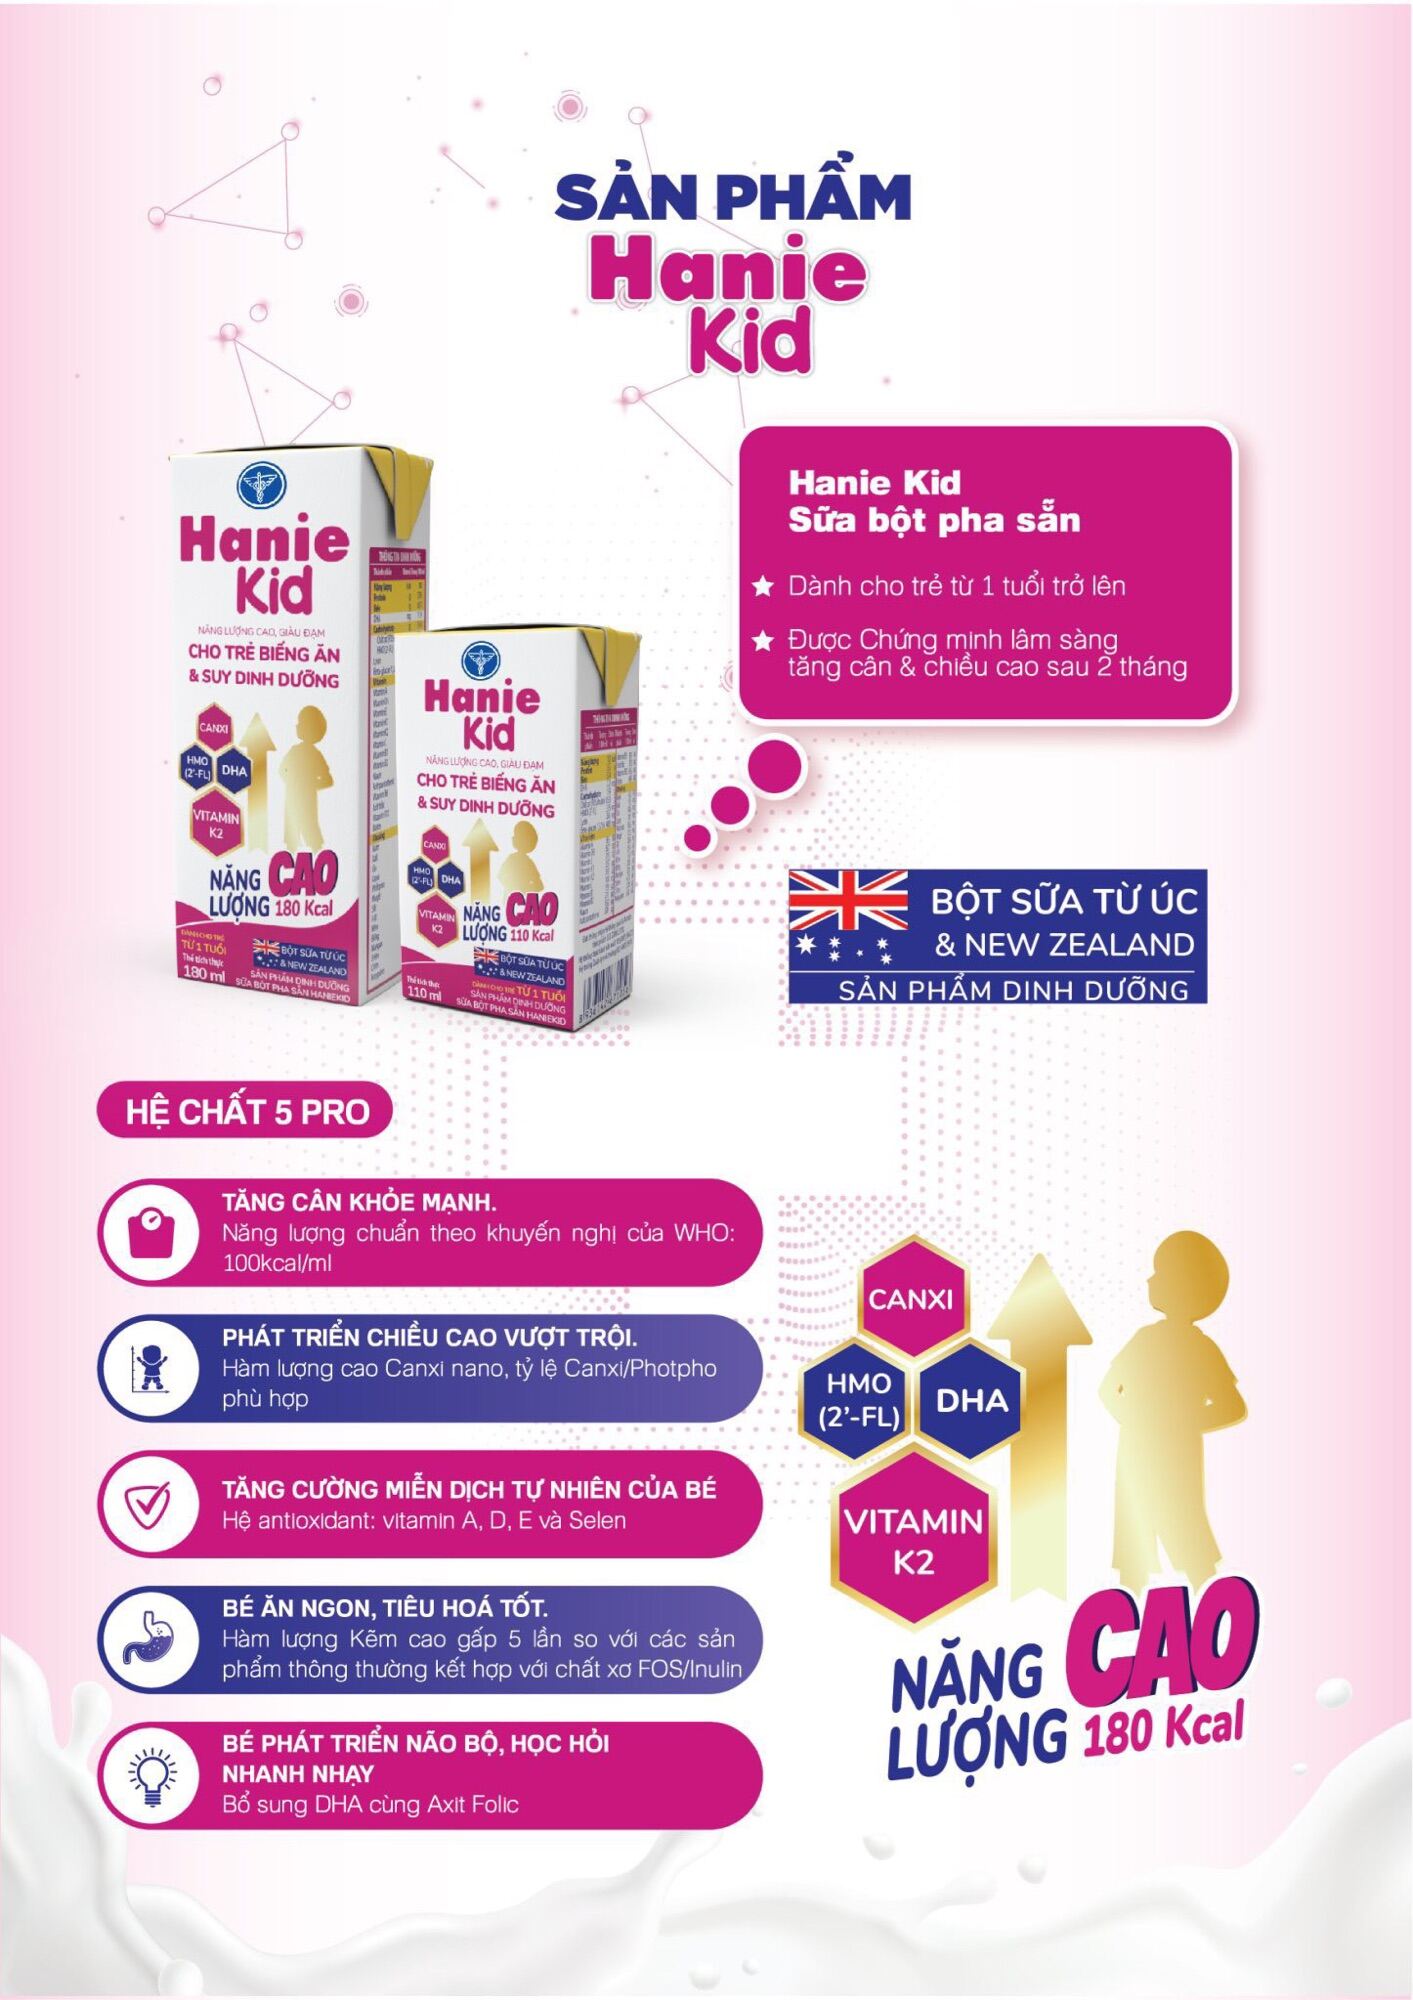 Sữa công thức pha sẵn Nutricare Hanie Kid dinh dưỡng cho trẻ biếng ăn và suy dinh dưỡng, cho trẻ từ 1 tuổi [Thùng 48H x 180ml]